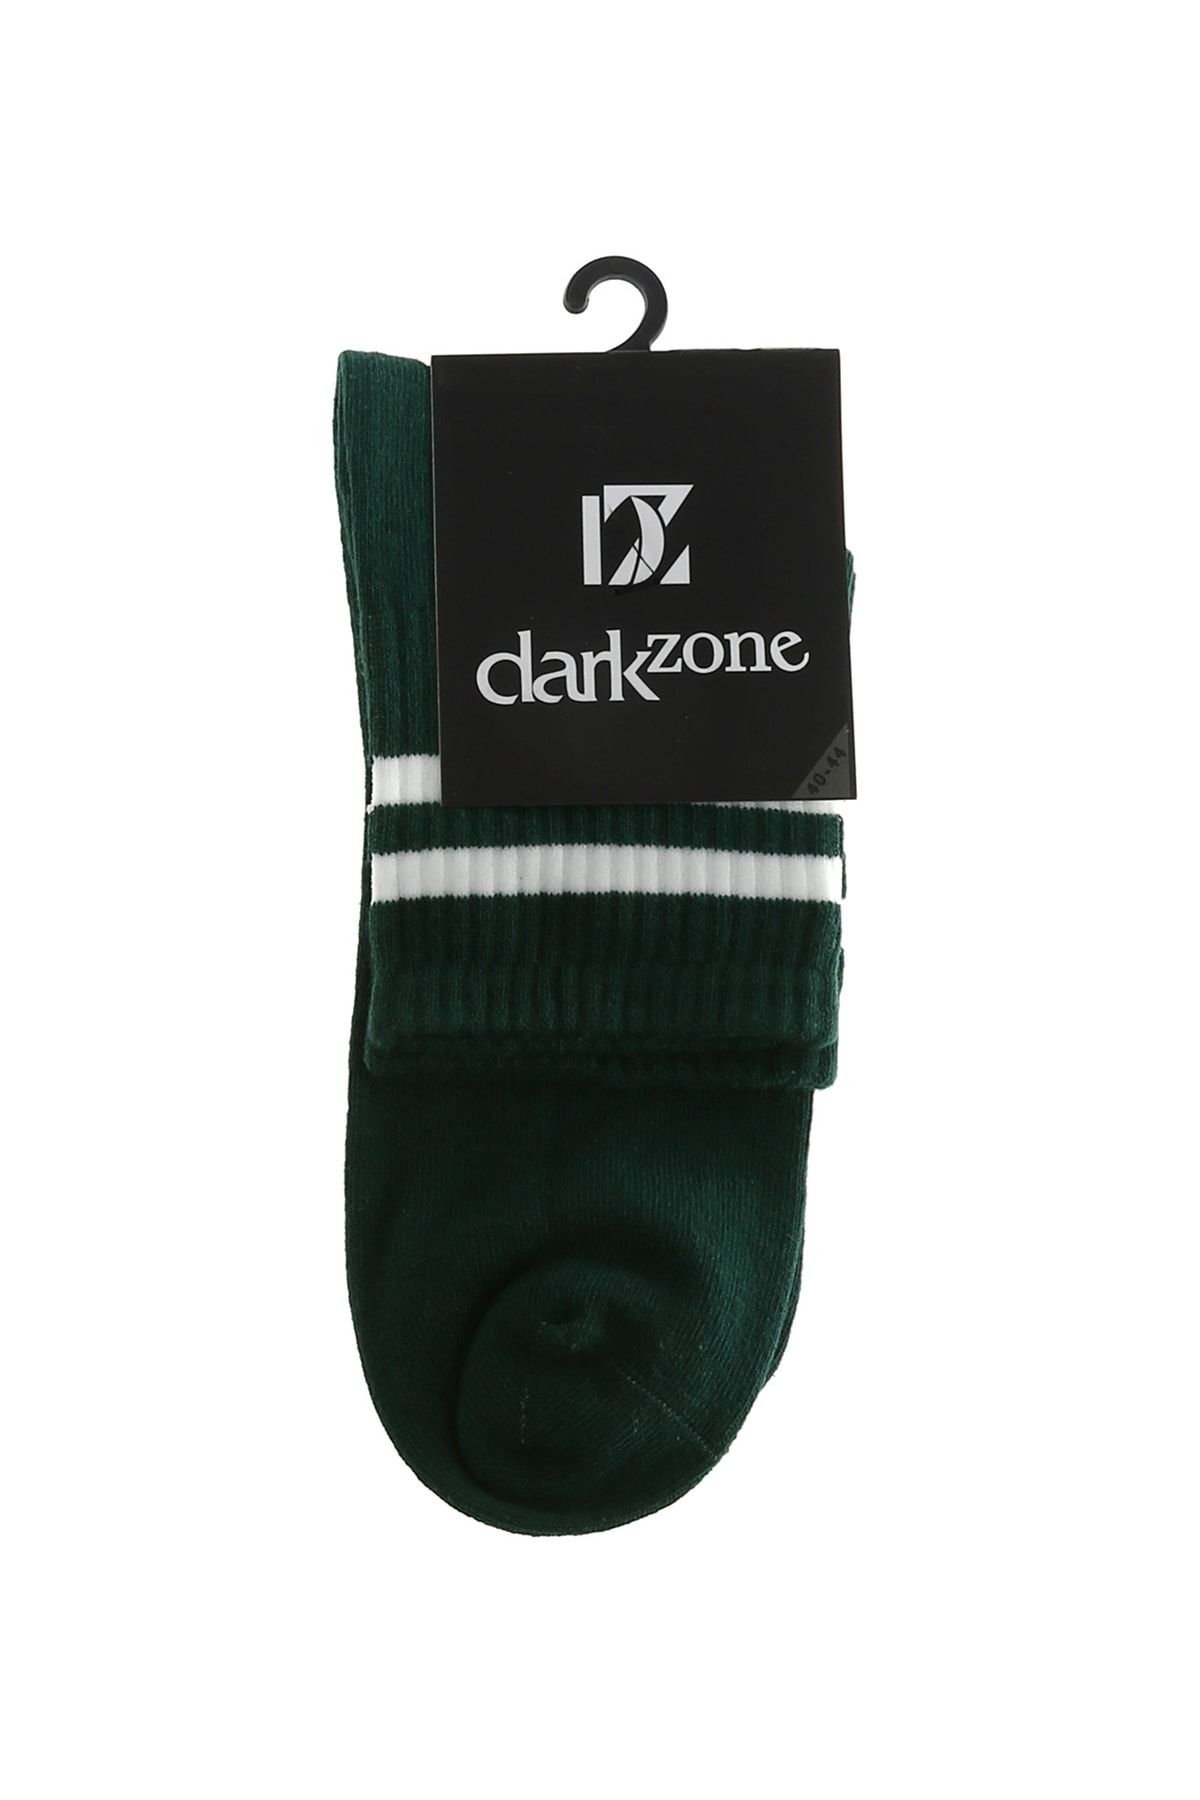 Darkzone Dzcp0027 Yeşil Erkek Çorap